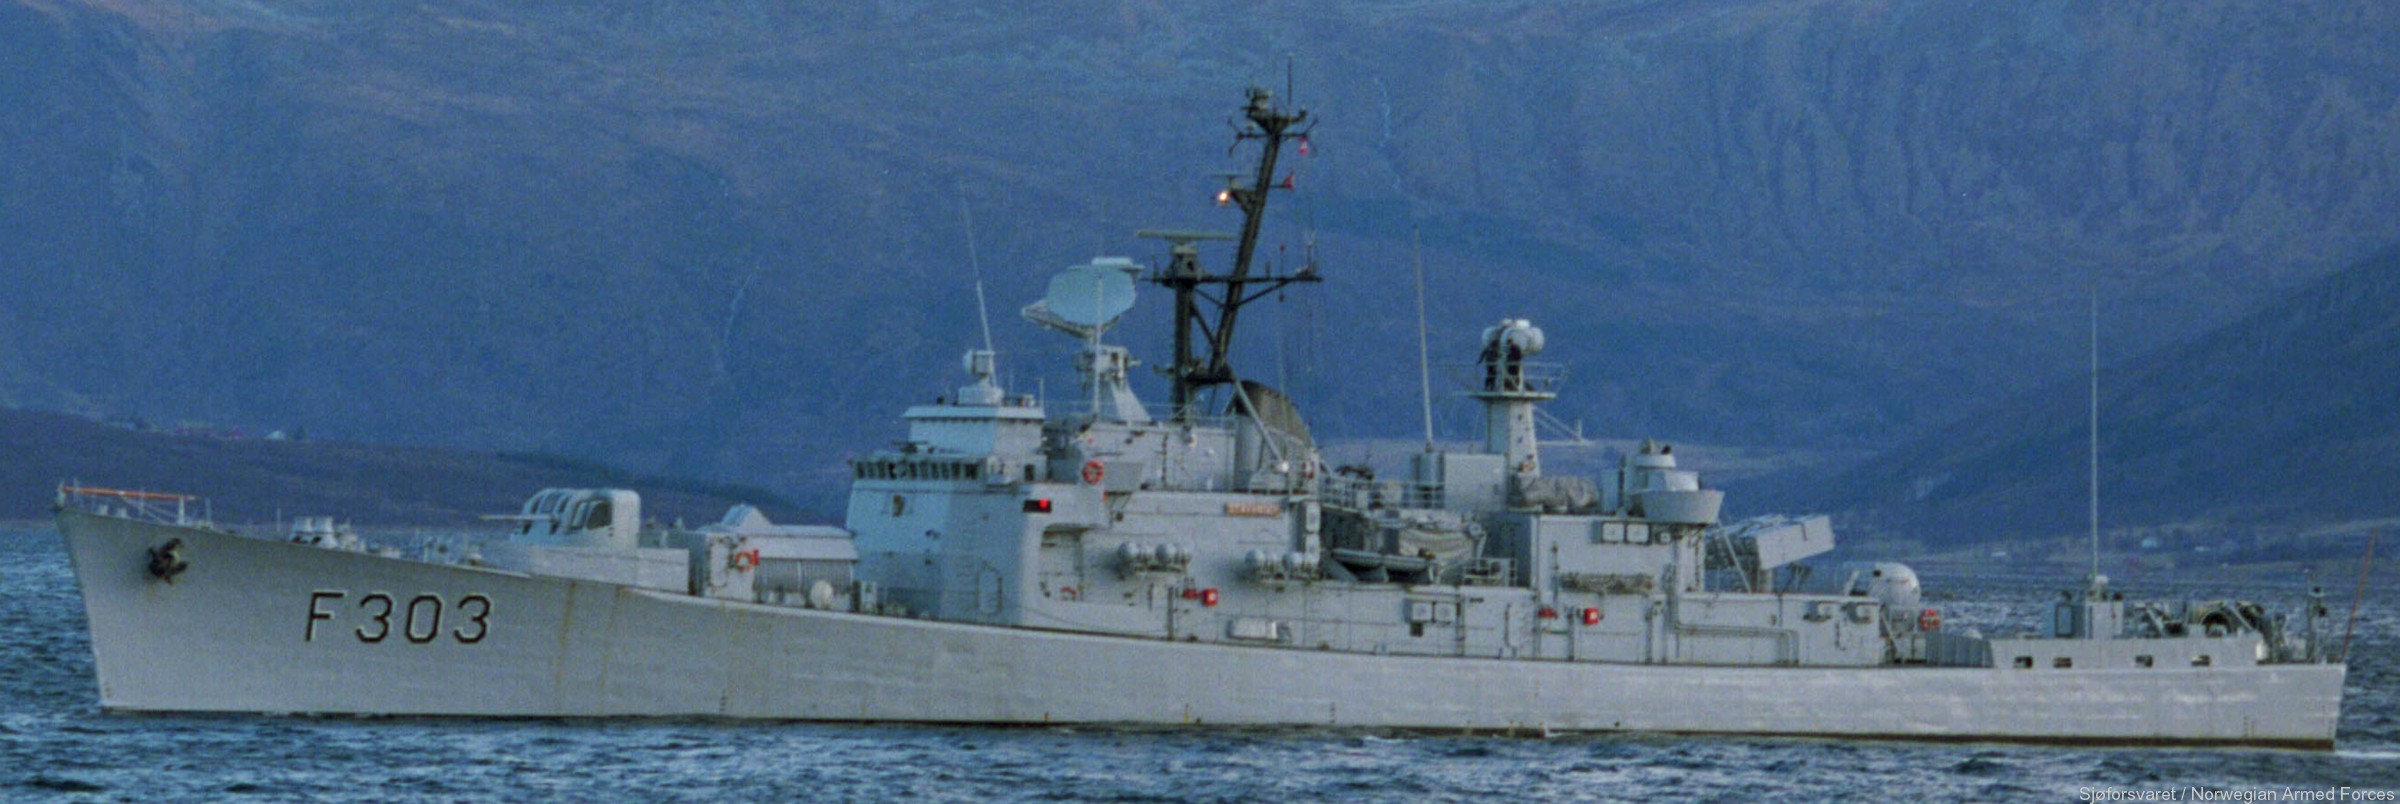 f-303 hnoms stavanger knm oslo class frigate royal norwegian navy sjoforsvaret 03